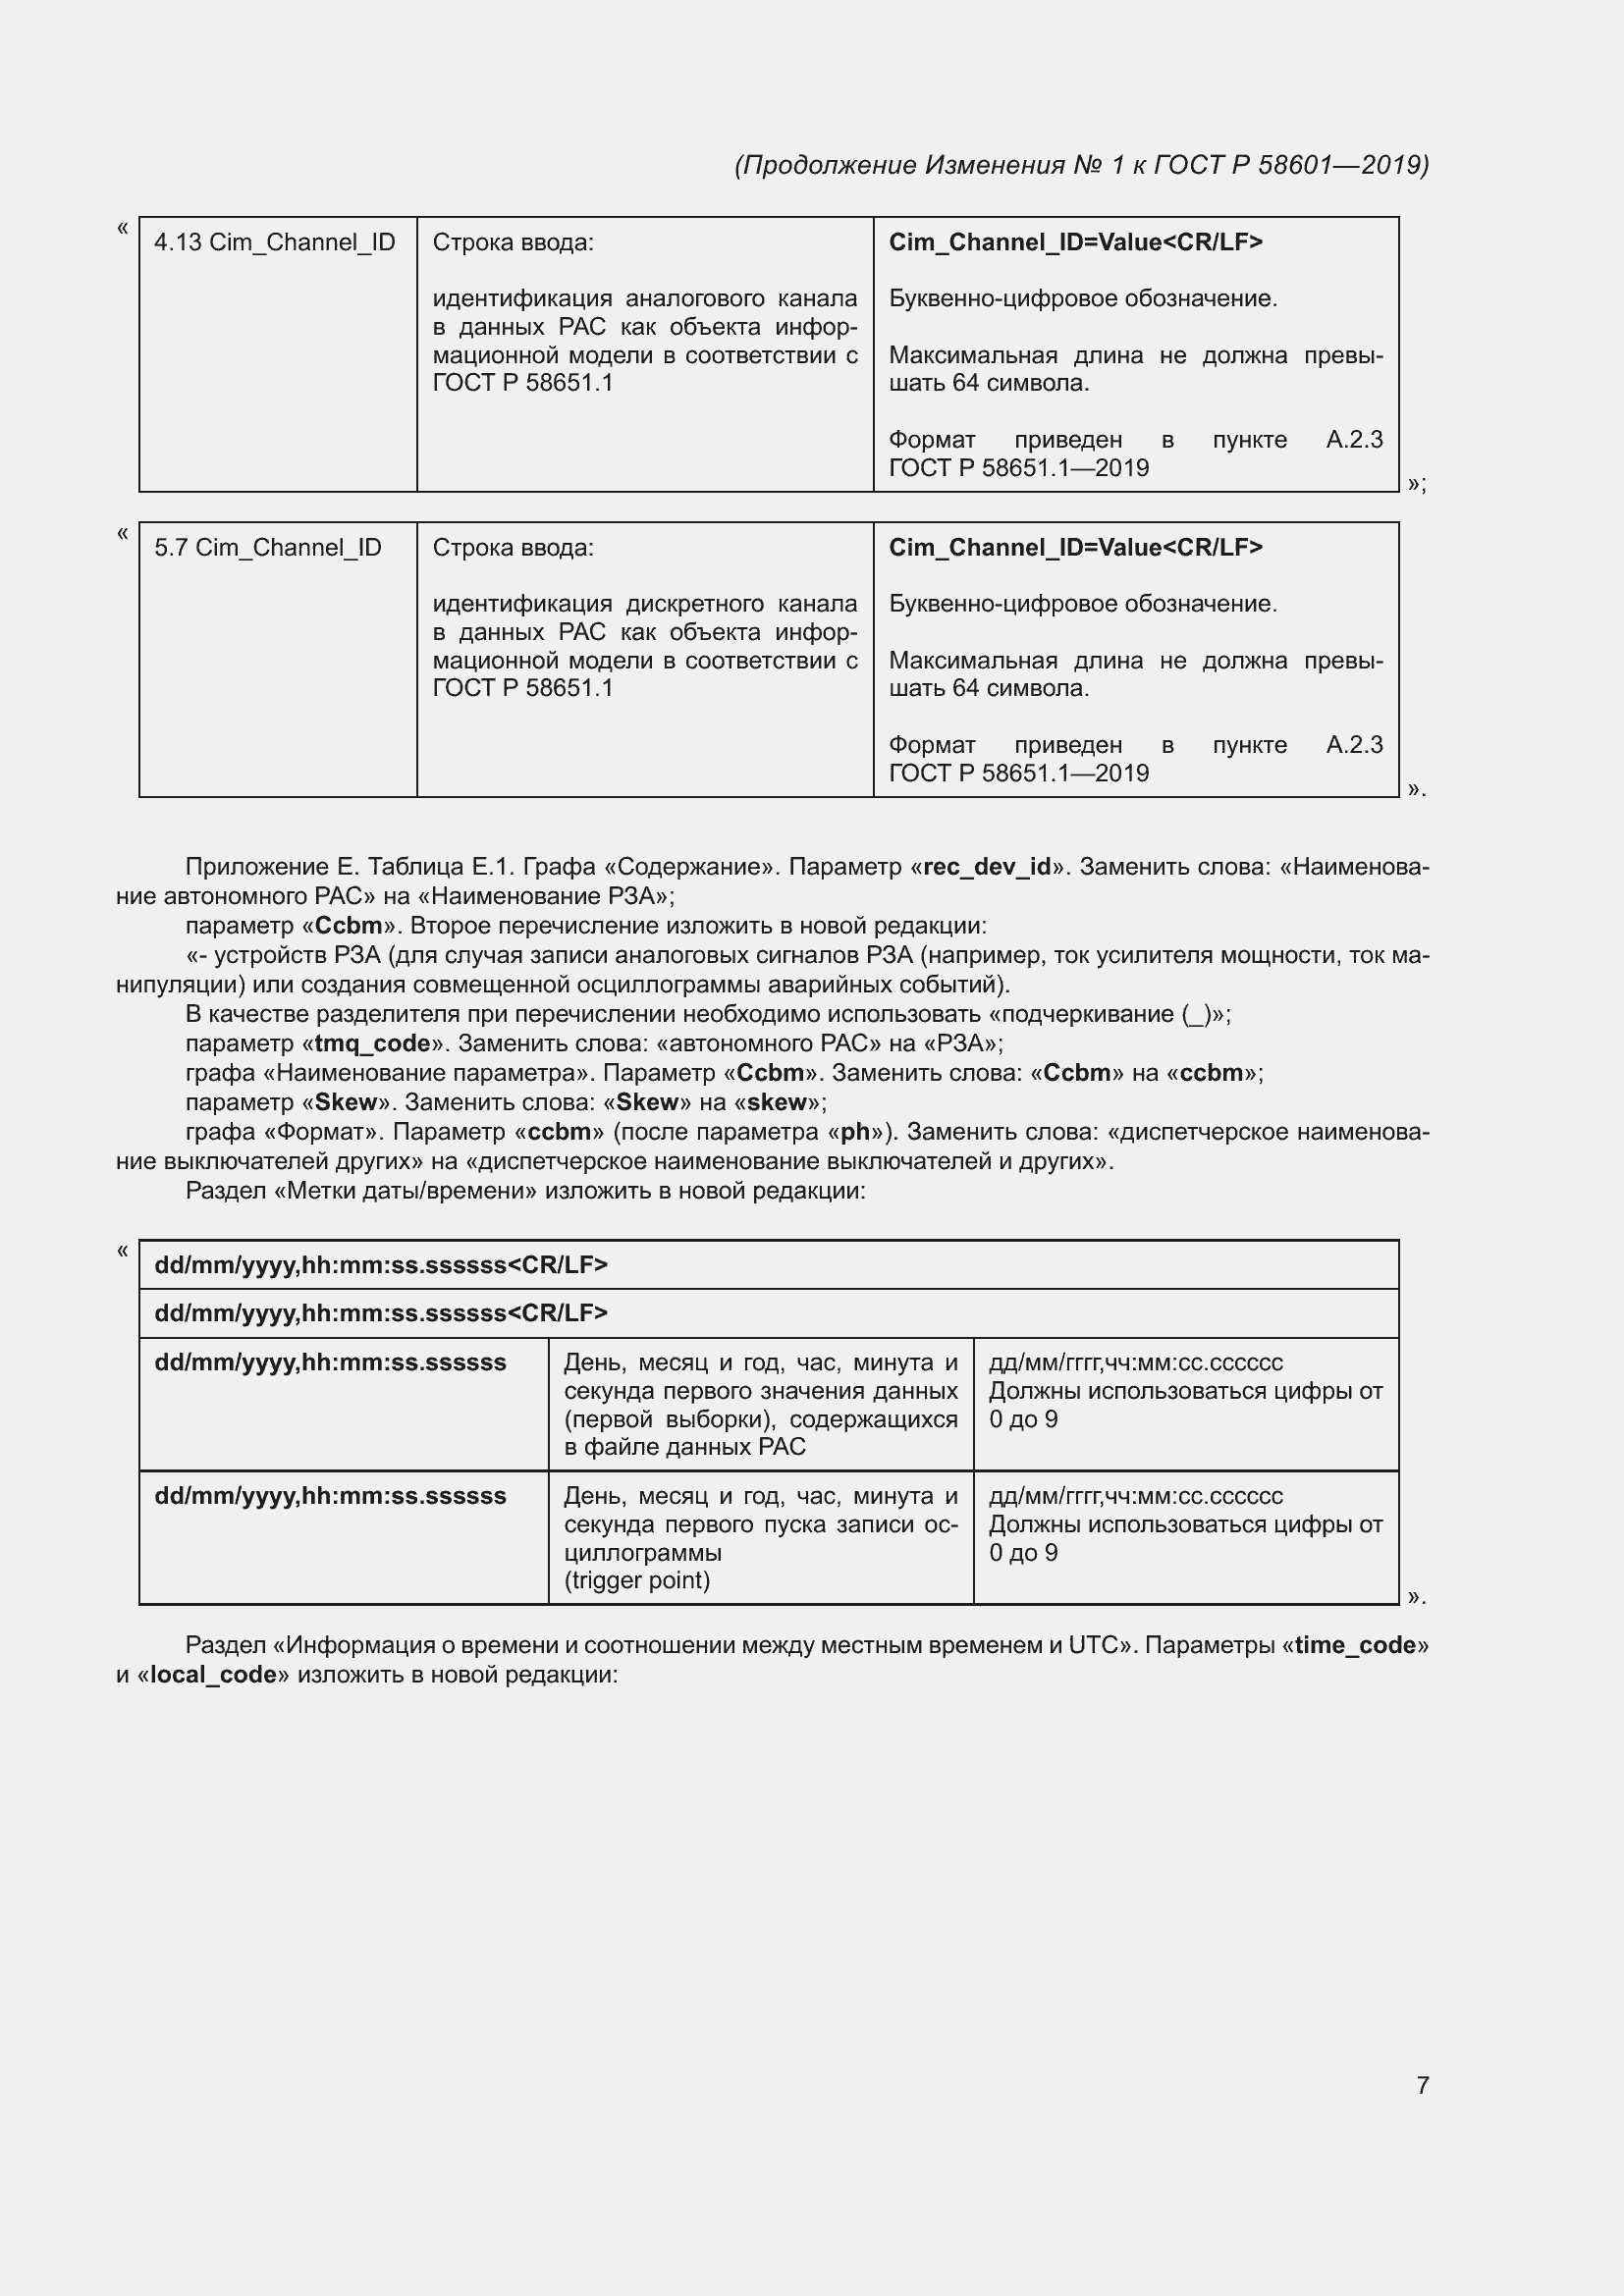 Изменение №1 к ГОСТ Р 58601-2019